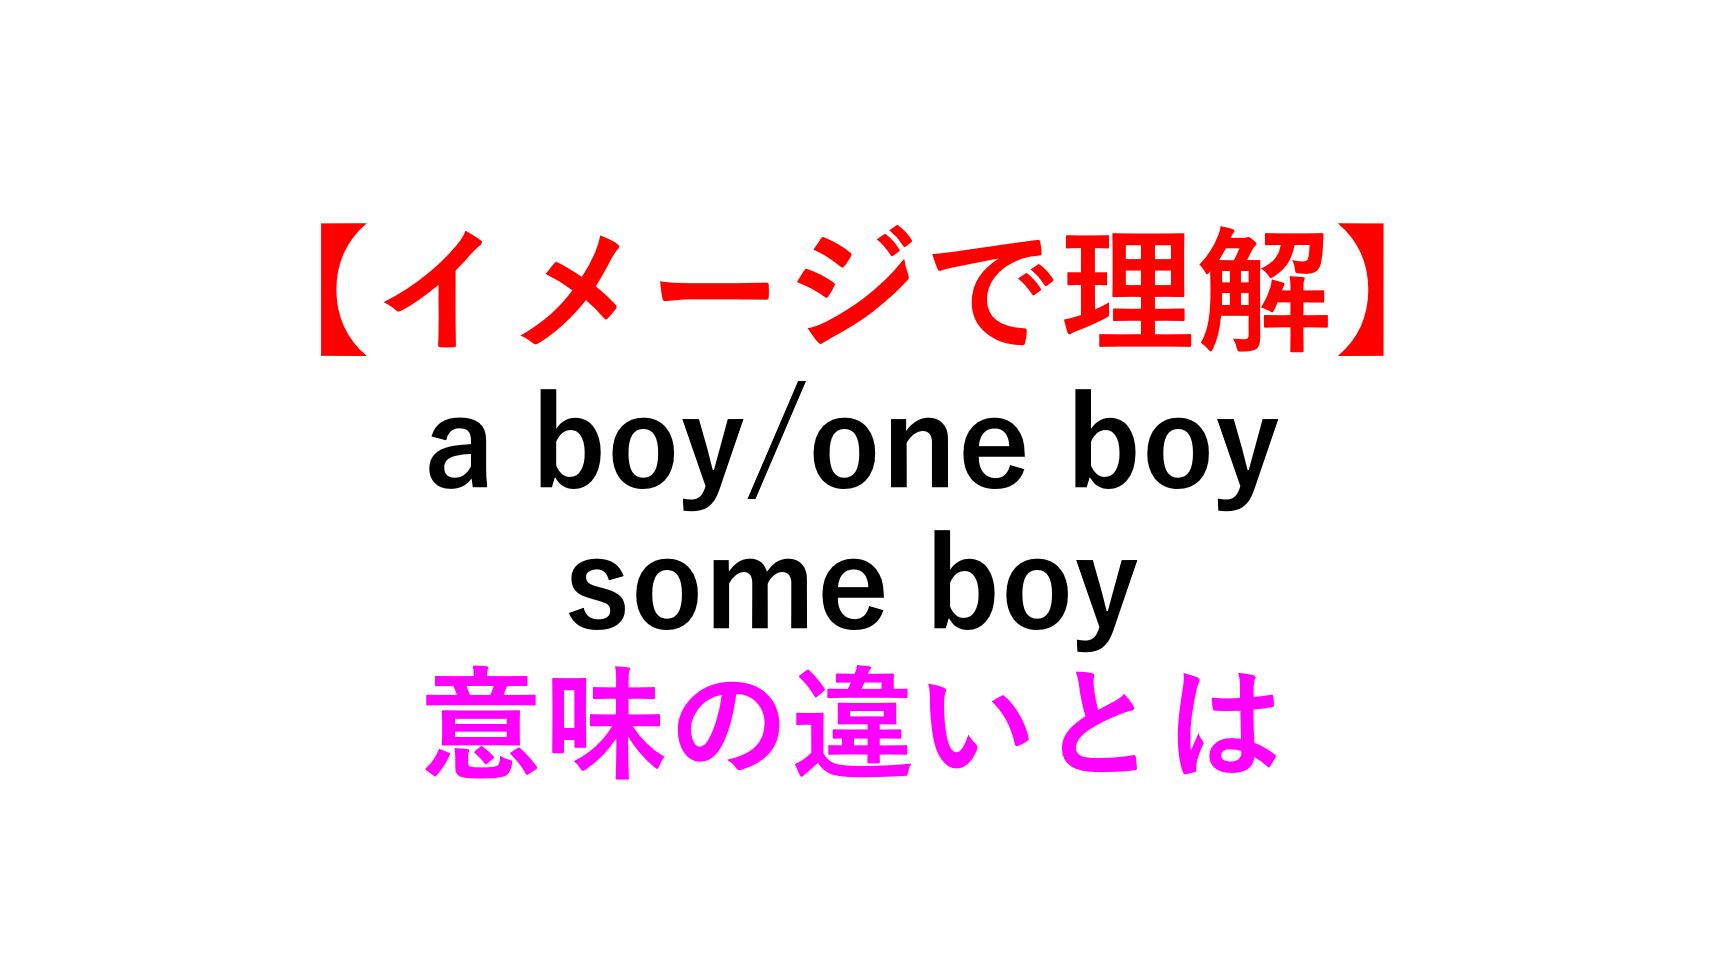 イメージ理解】a boy/one boy/some boyの意味の違い -例文付 | | 死ぬ